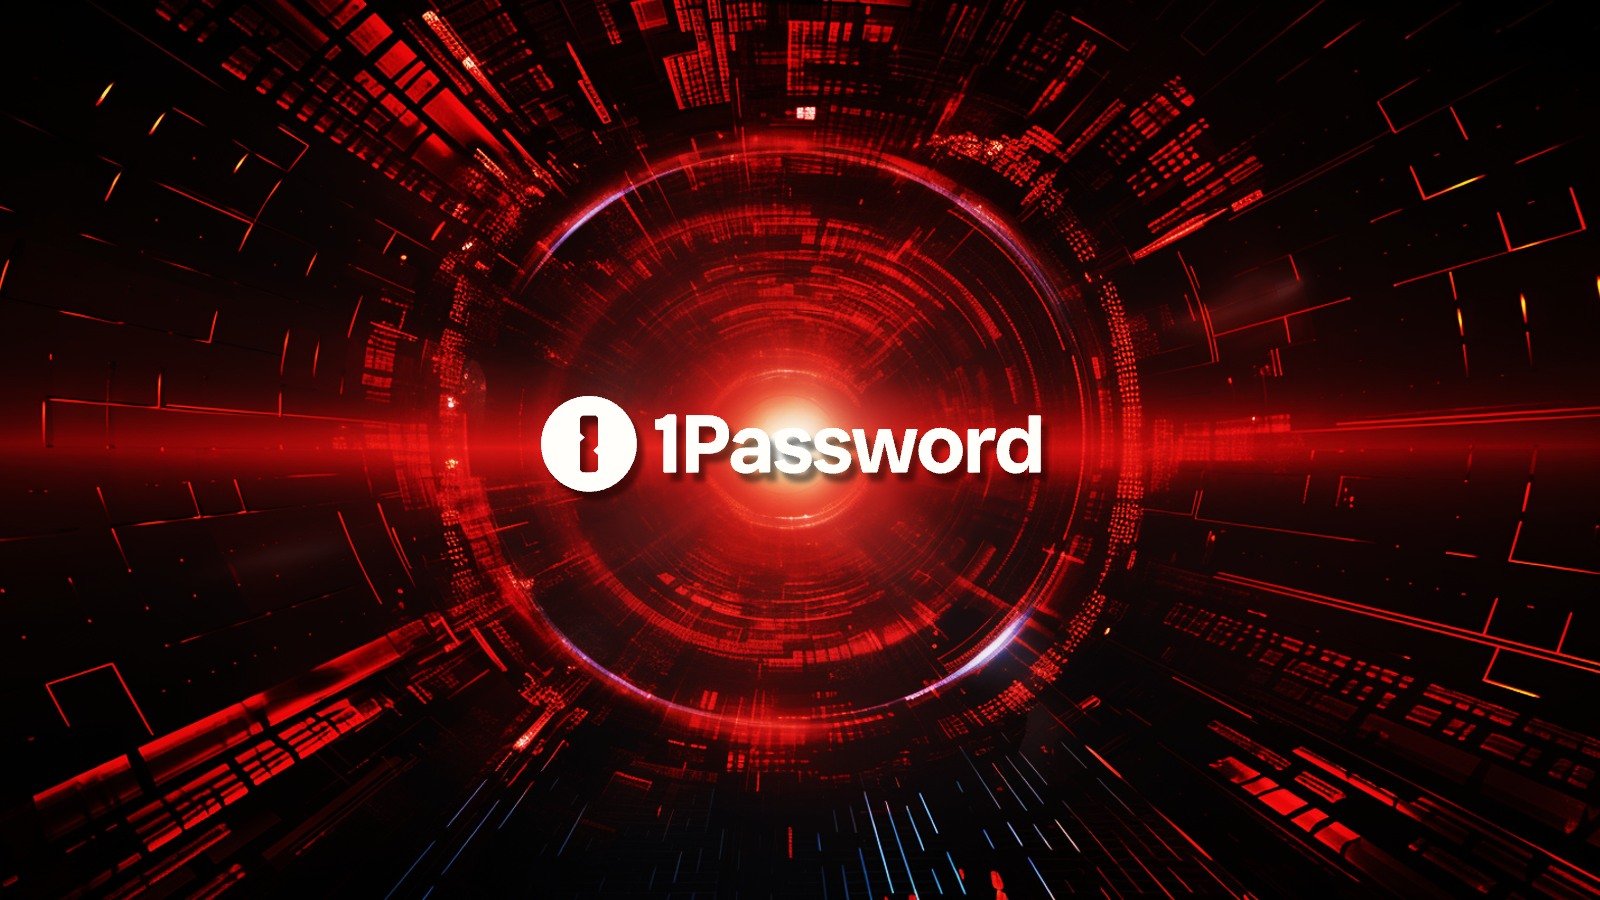 1Password - Okta Hack